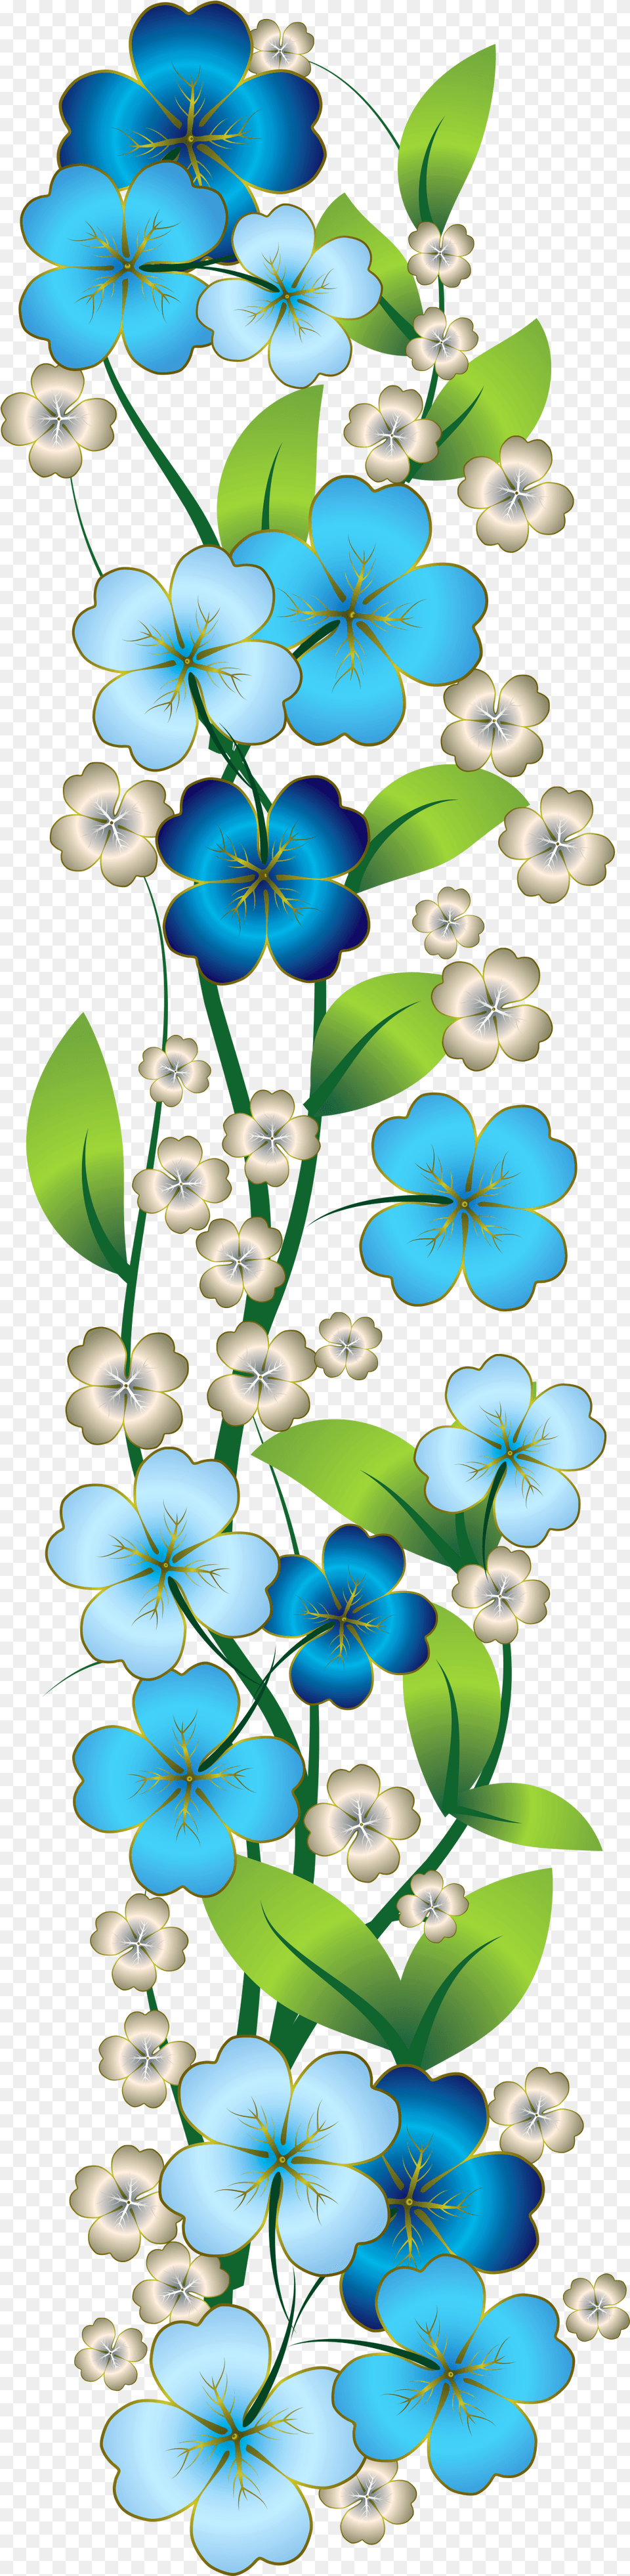 Flutes Clipart Bansi Blue Flower Border Art, Graphics, Pattern, Floral Design Free Transparent Png